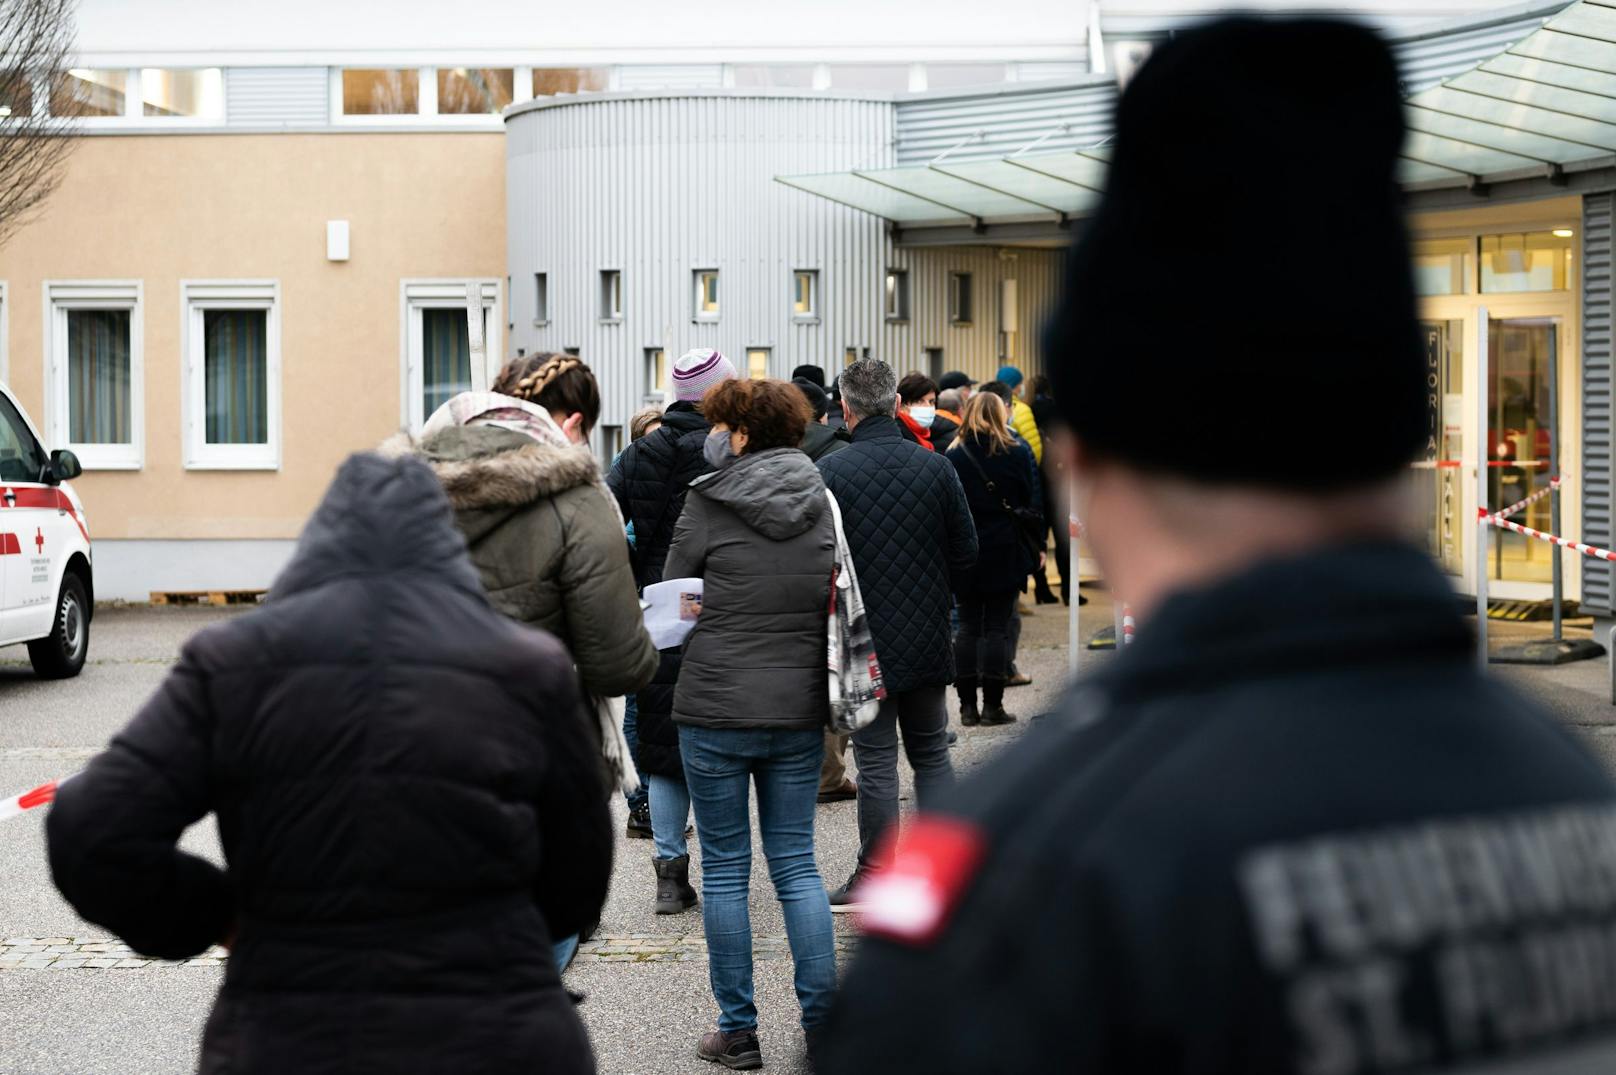 Testwillige beim Zugang zu einer Teststrasse im Rahmen von Covid-19-Massentests in St. Florian bei Linz